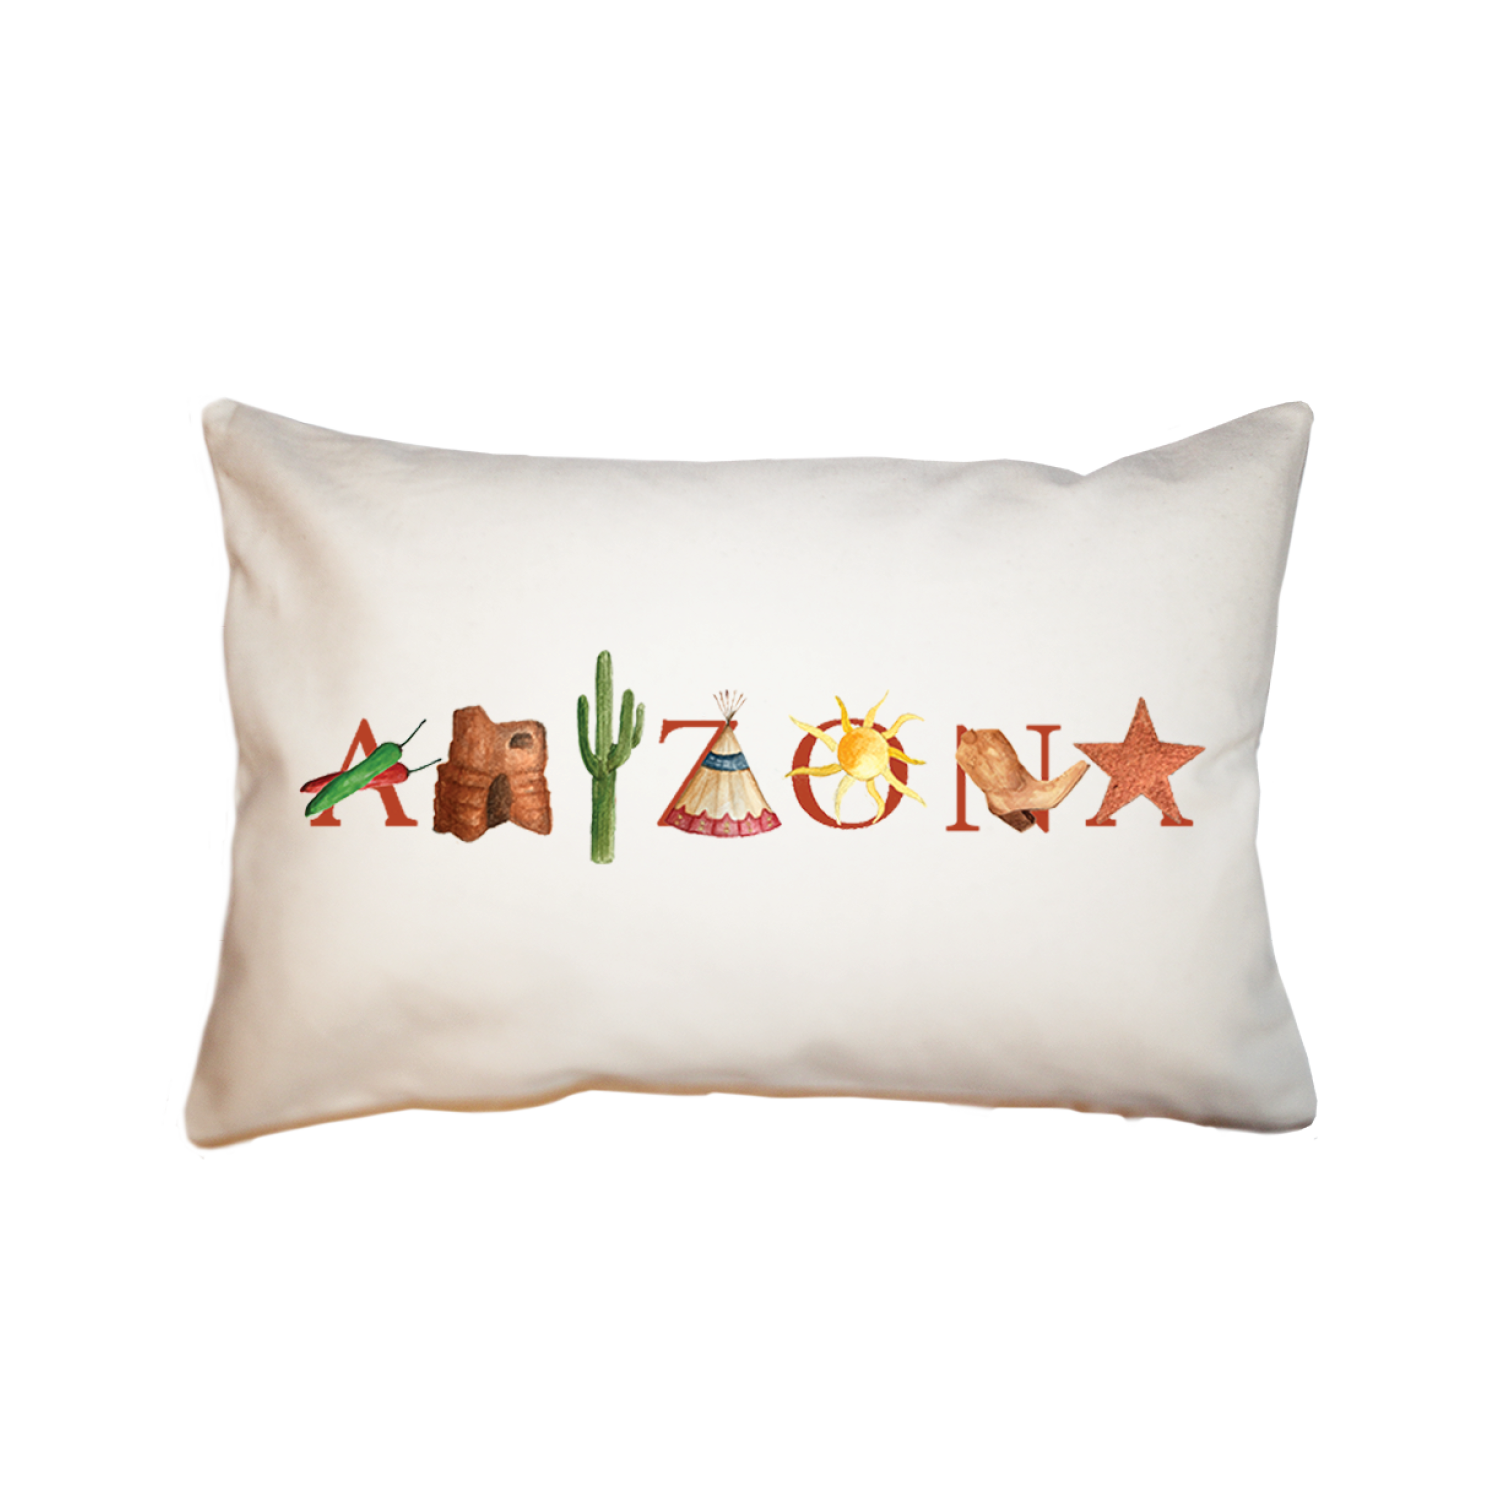 Arizona large rectangle pillow